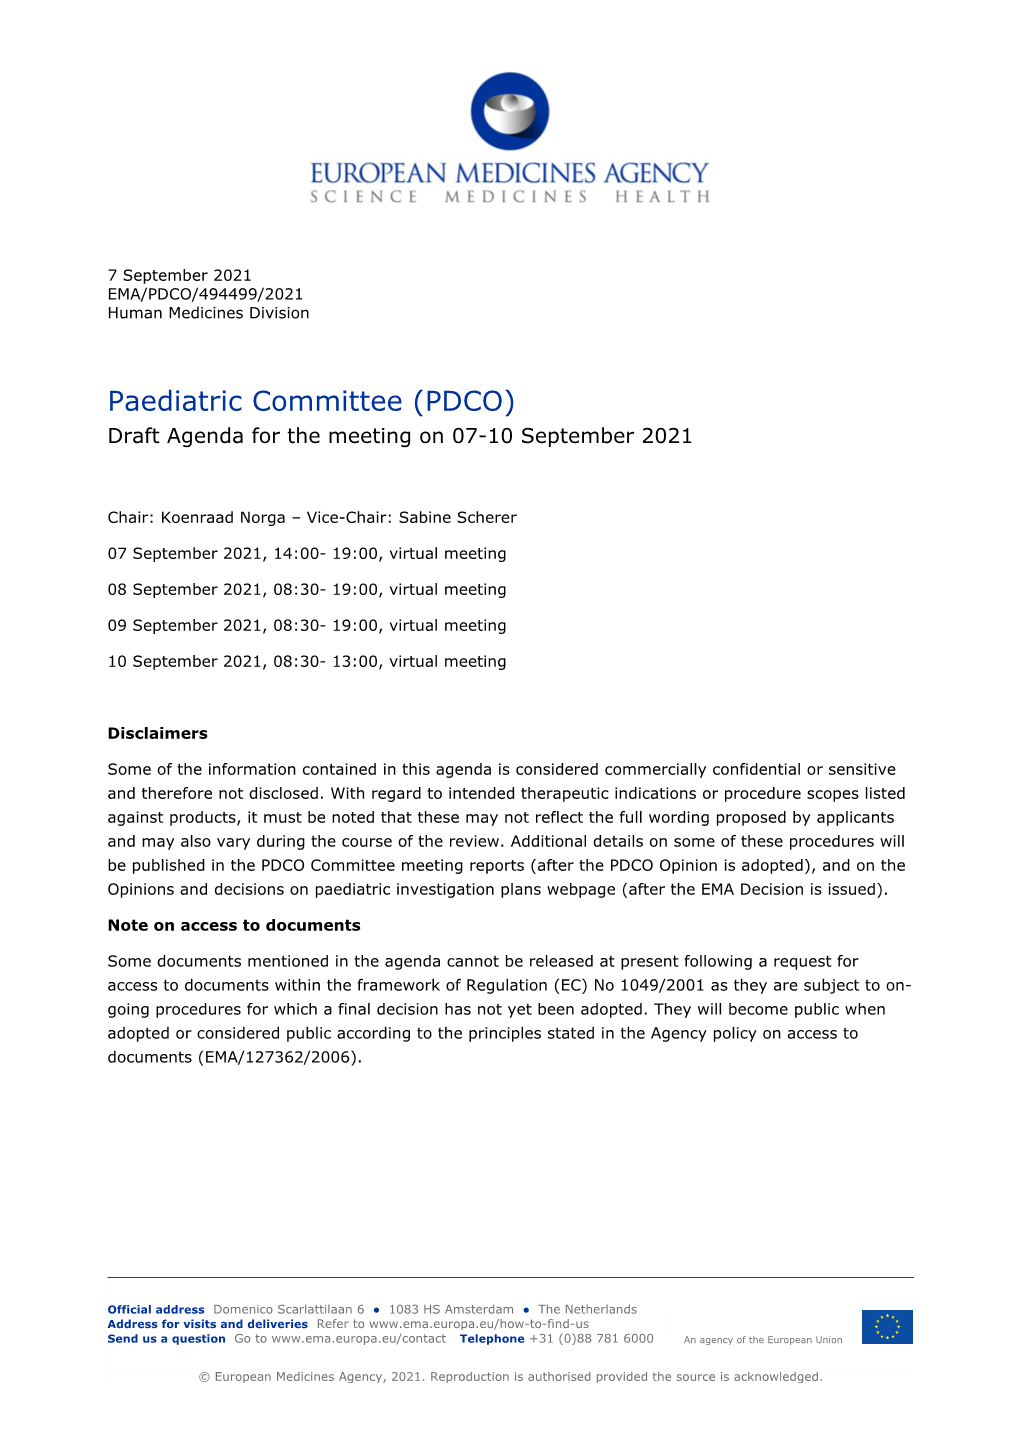 Draft PDCO Agenda 07-10 September 2021